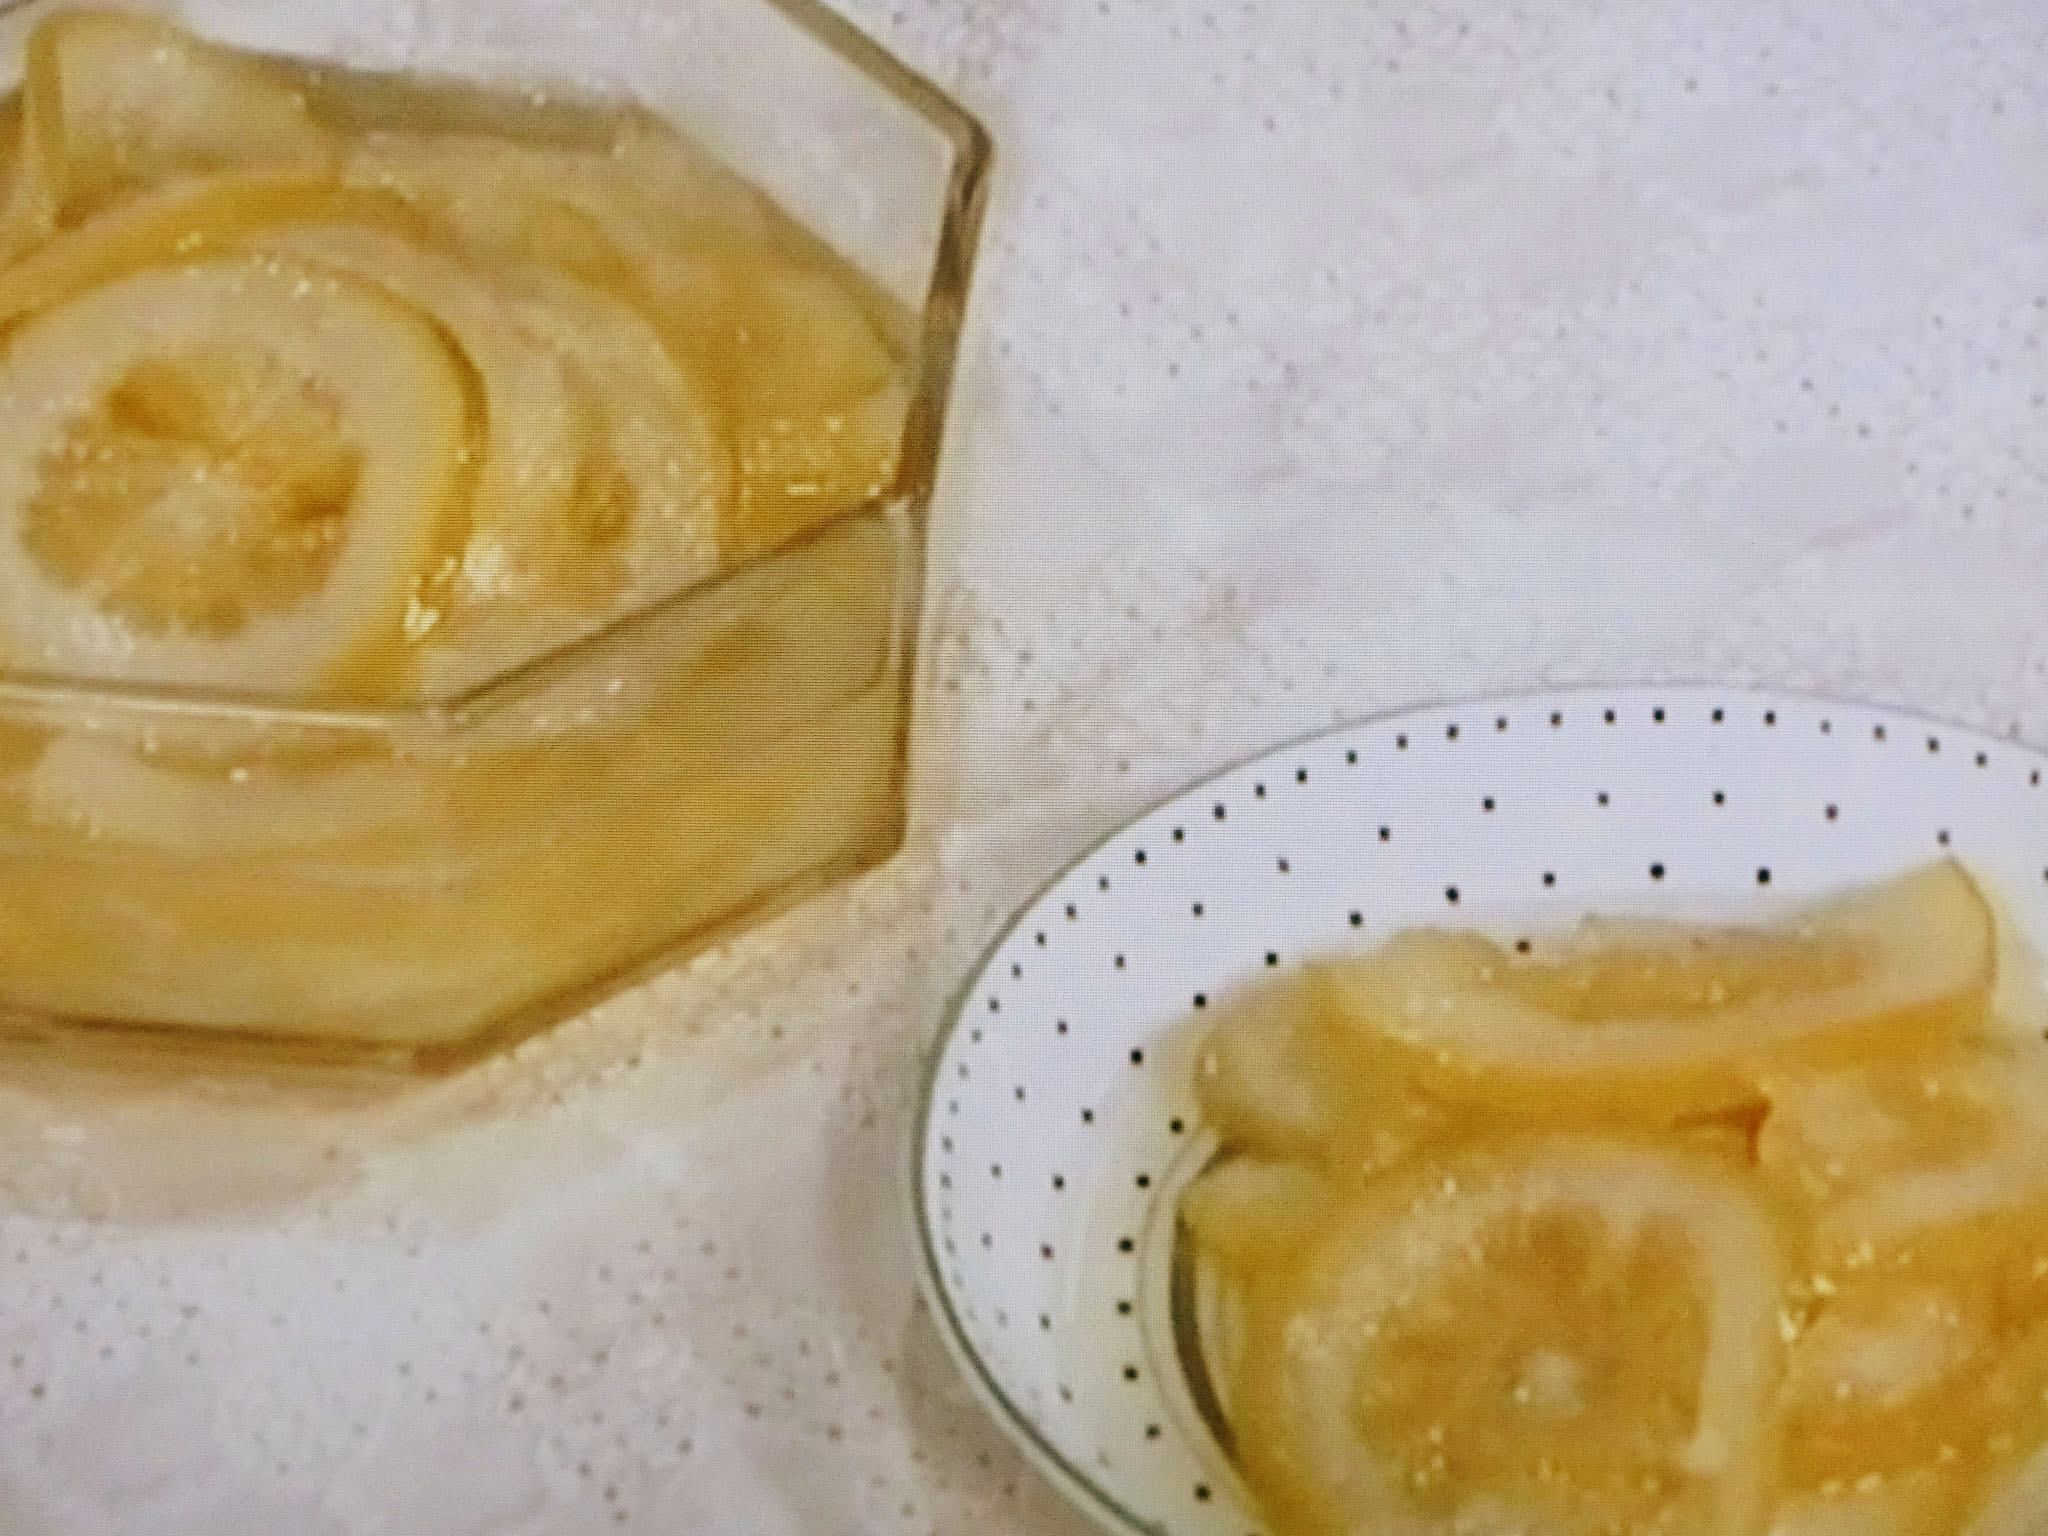 きょうの料理 浅炊きレモン セミドライレモンの料理レシピ おさらいキッチン